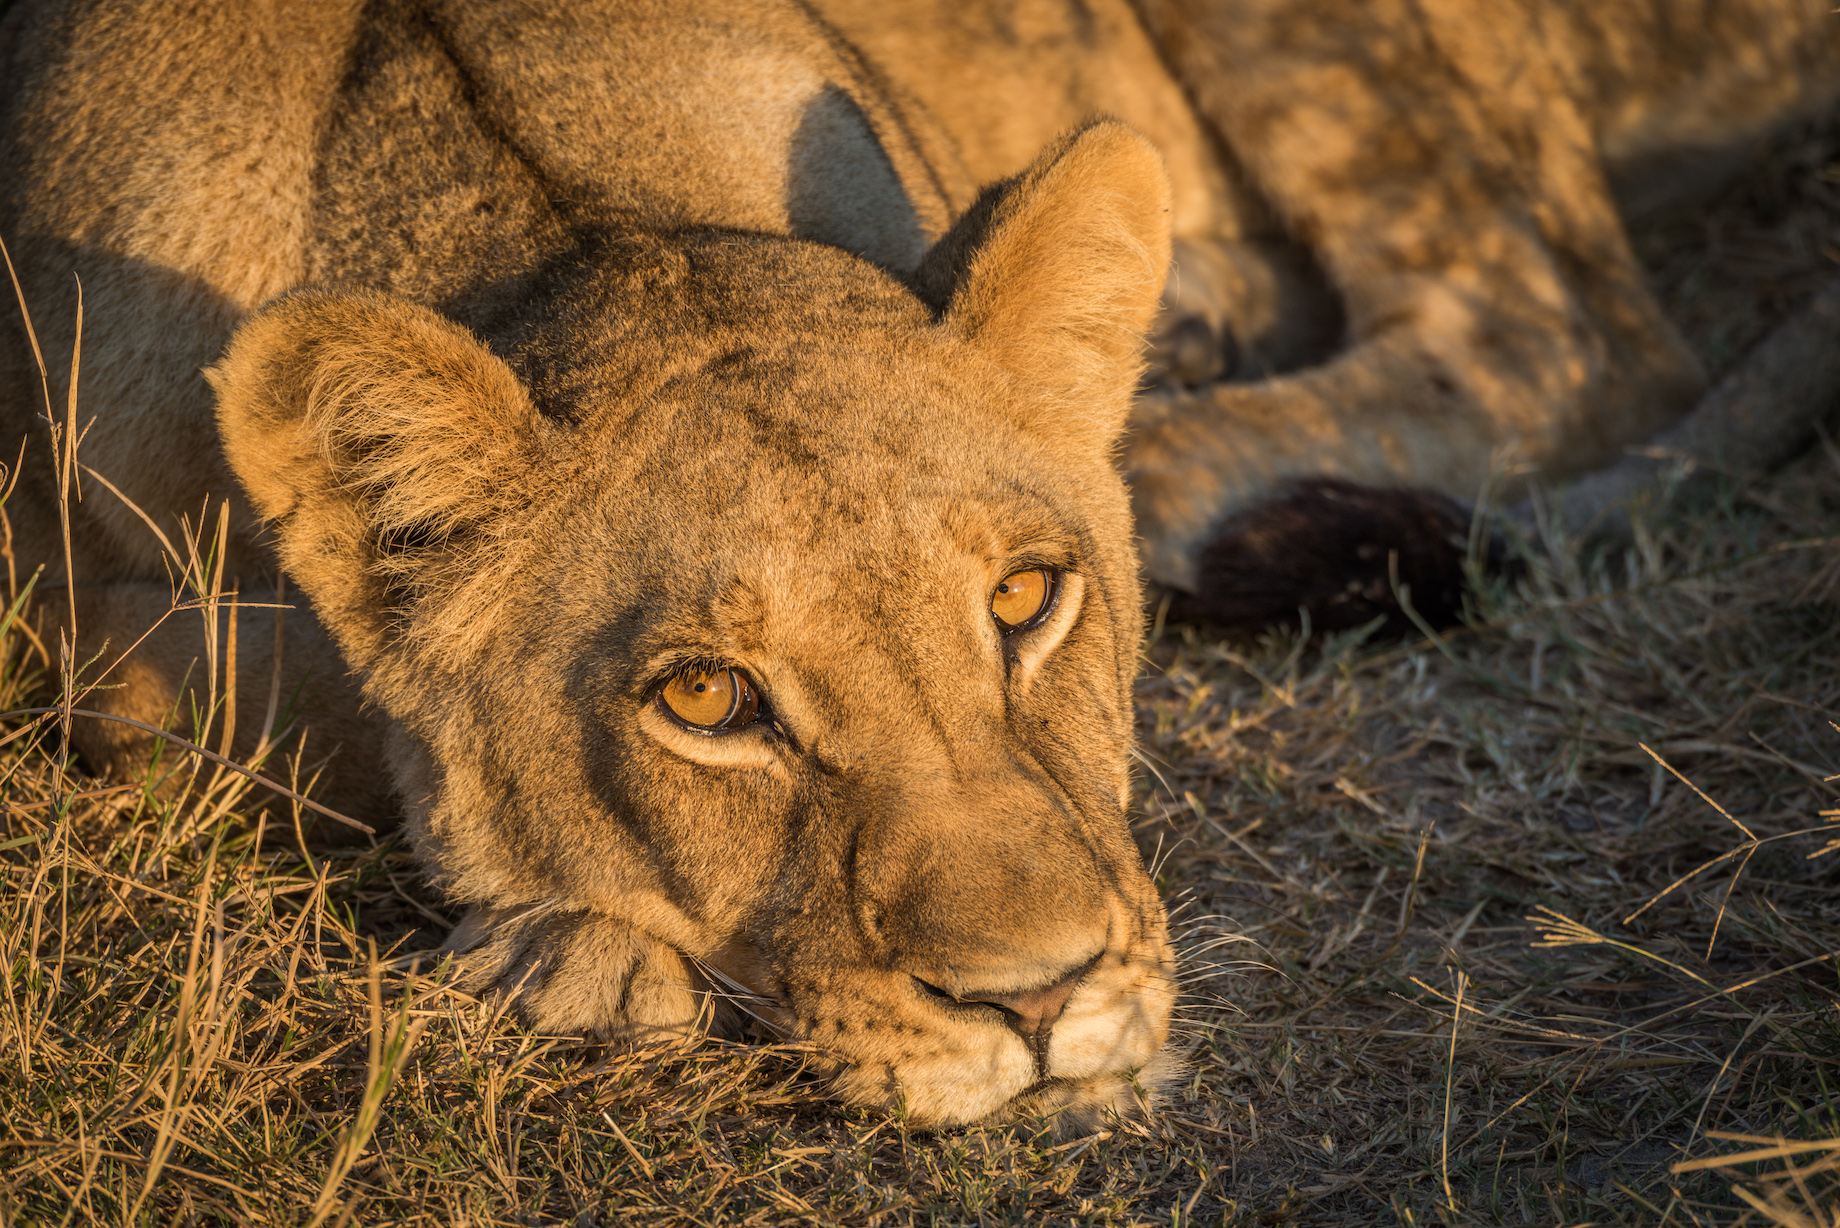 Close-up of sleepy lion staring at camera